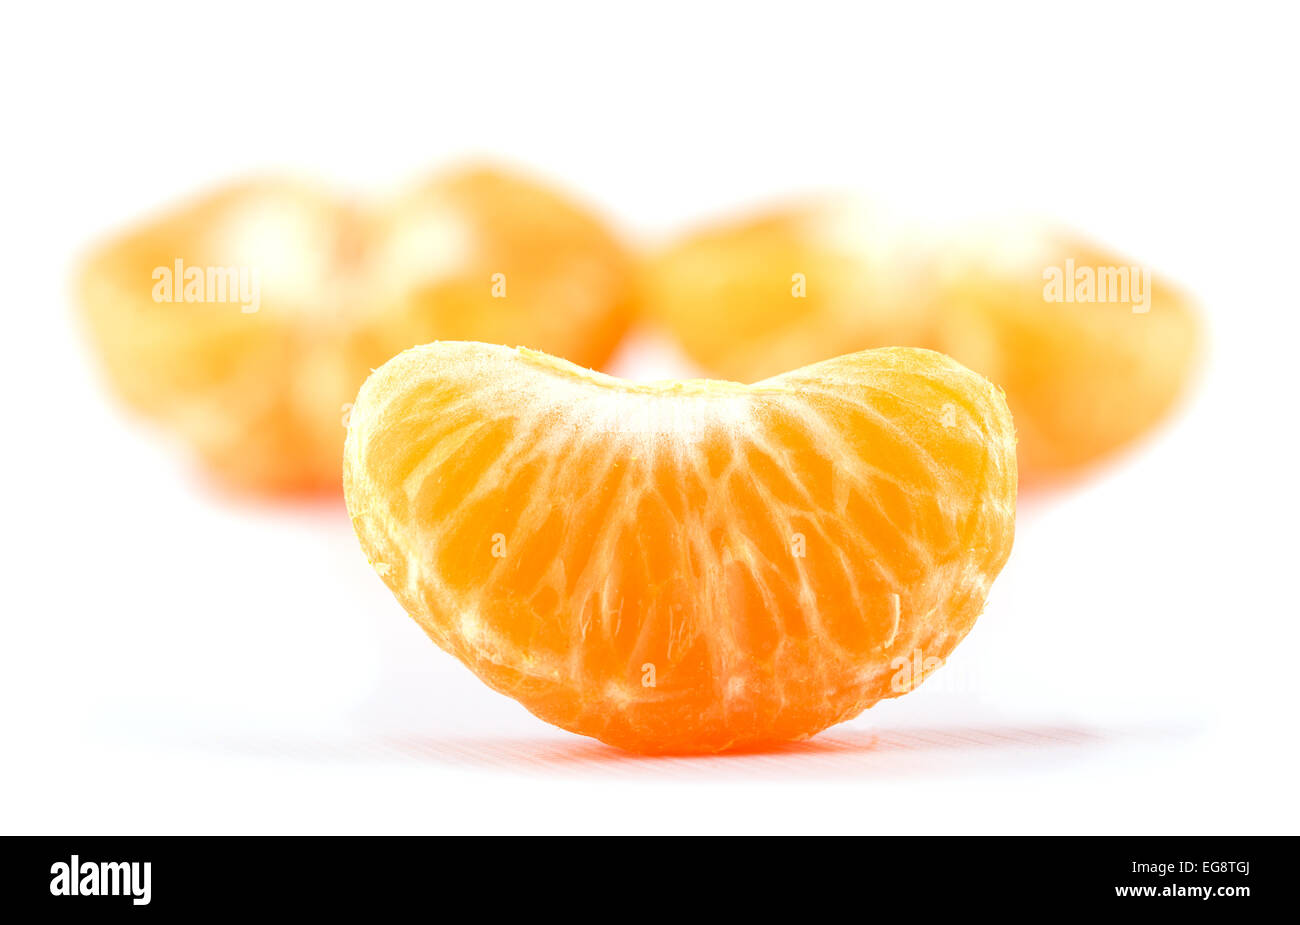 Tranche de clémentine, orange, avec deux moitiés sur l'arrière-plan, on white Banque D'Images